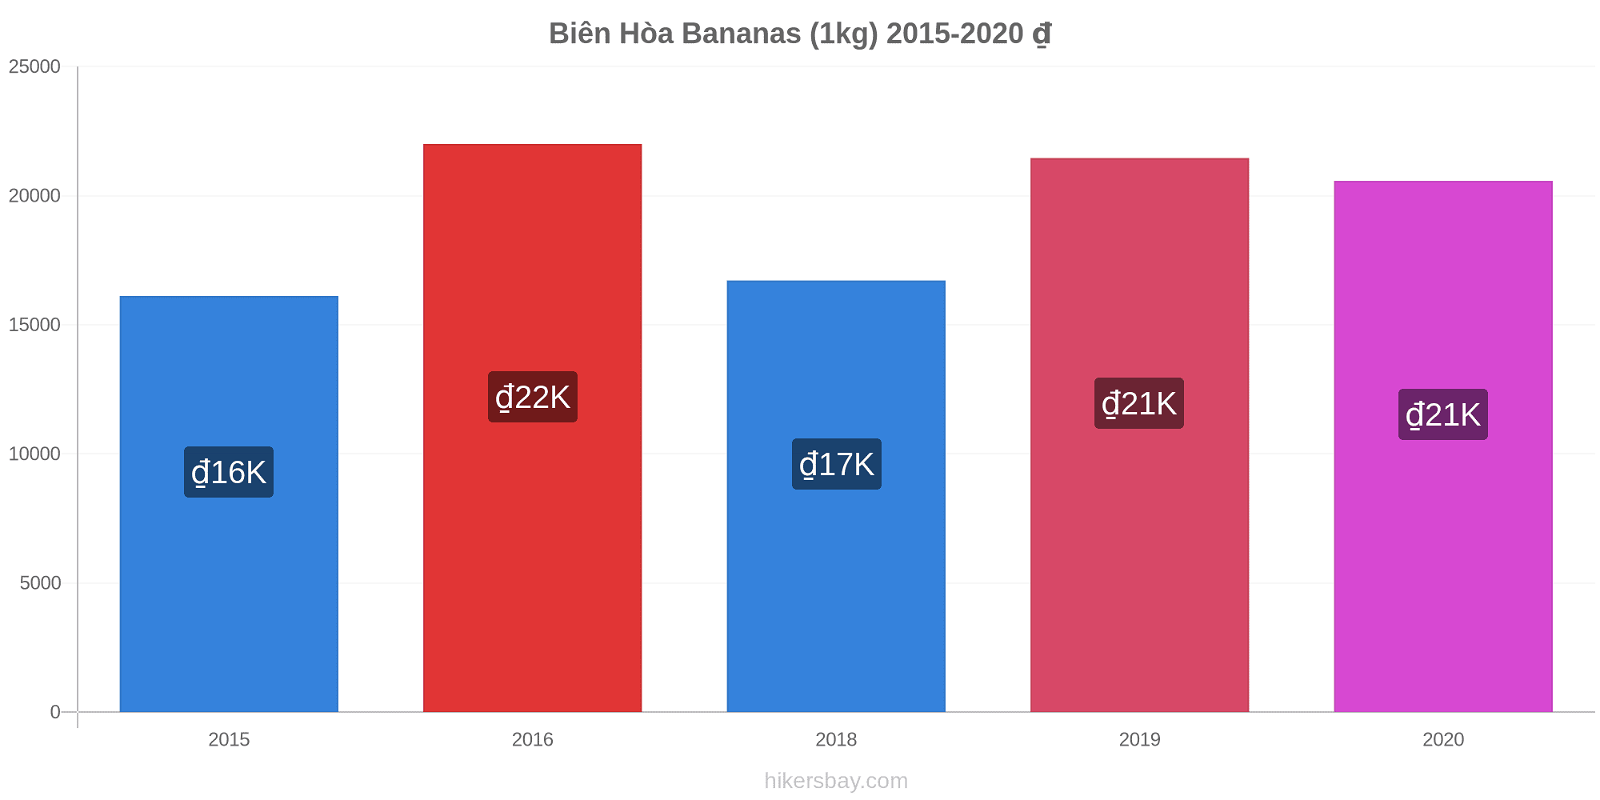 Biên Hòa price changes Bananas (1kg) hikersbay.com